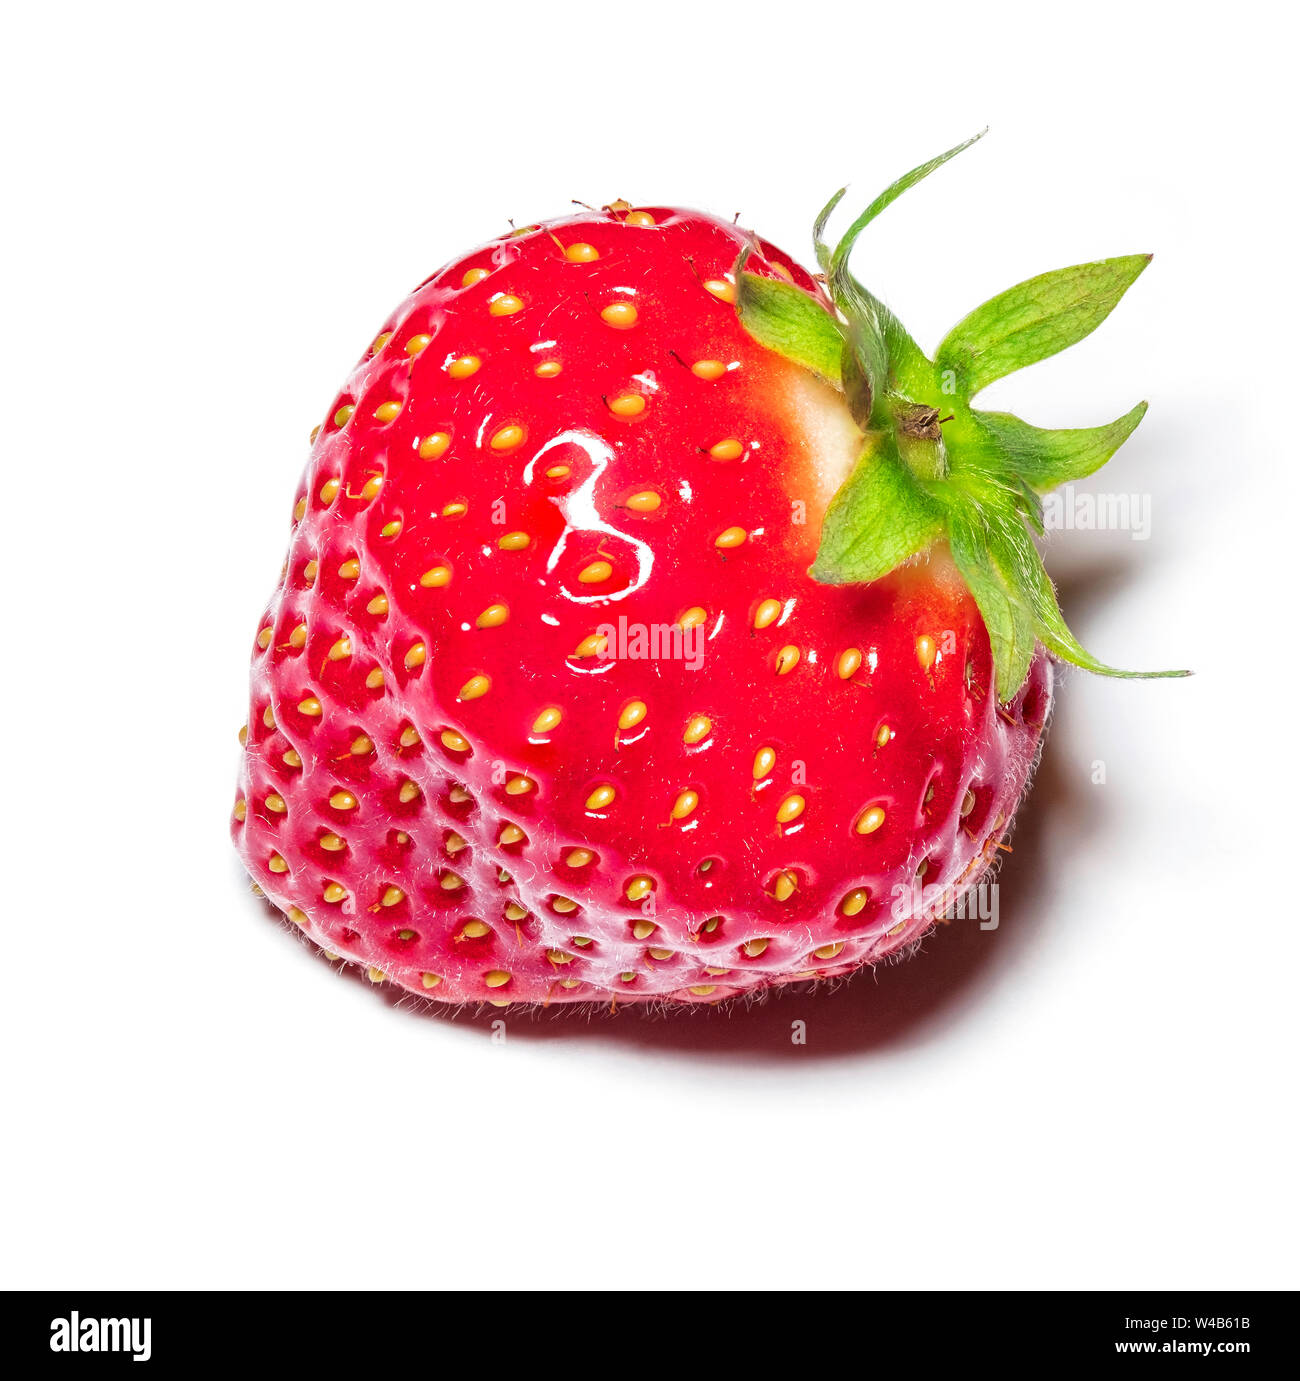 Makro Bild eines frisch gepflückte Erdbeere - Fokus gestapelt Foto Stockfoto